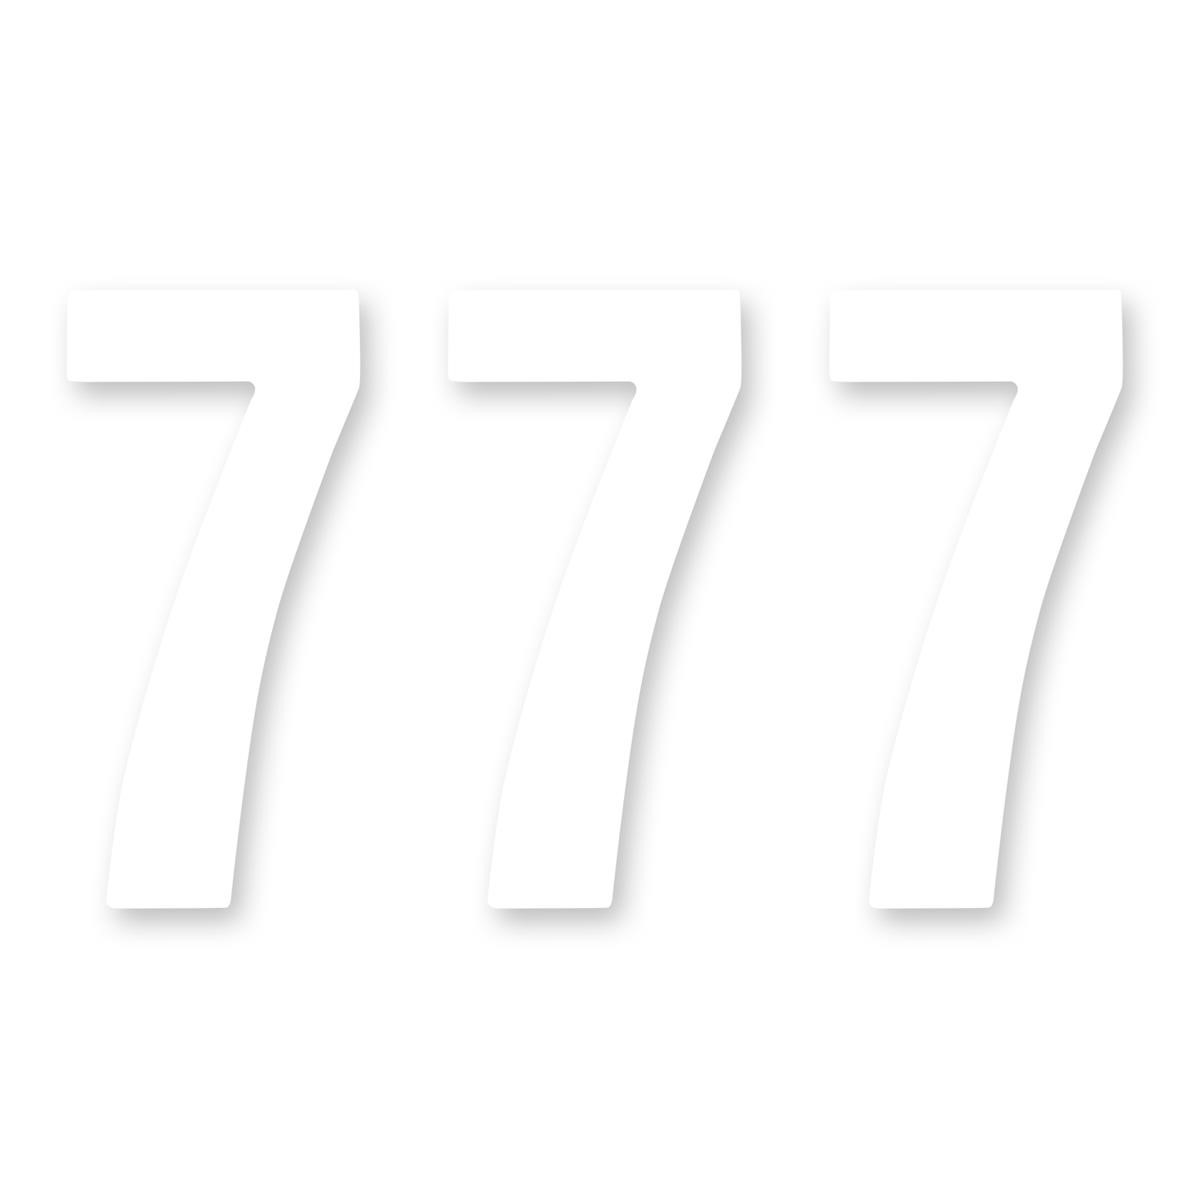 ZAP Kit Numeri Gara Standard Number 7, White, 15 cm, 3 pieces